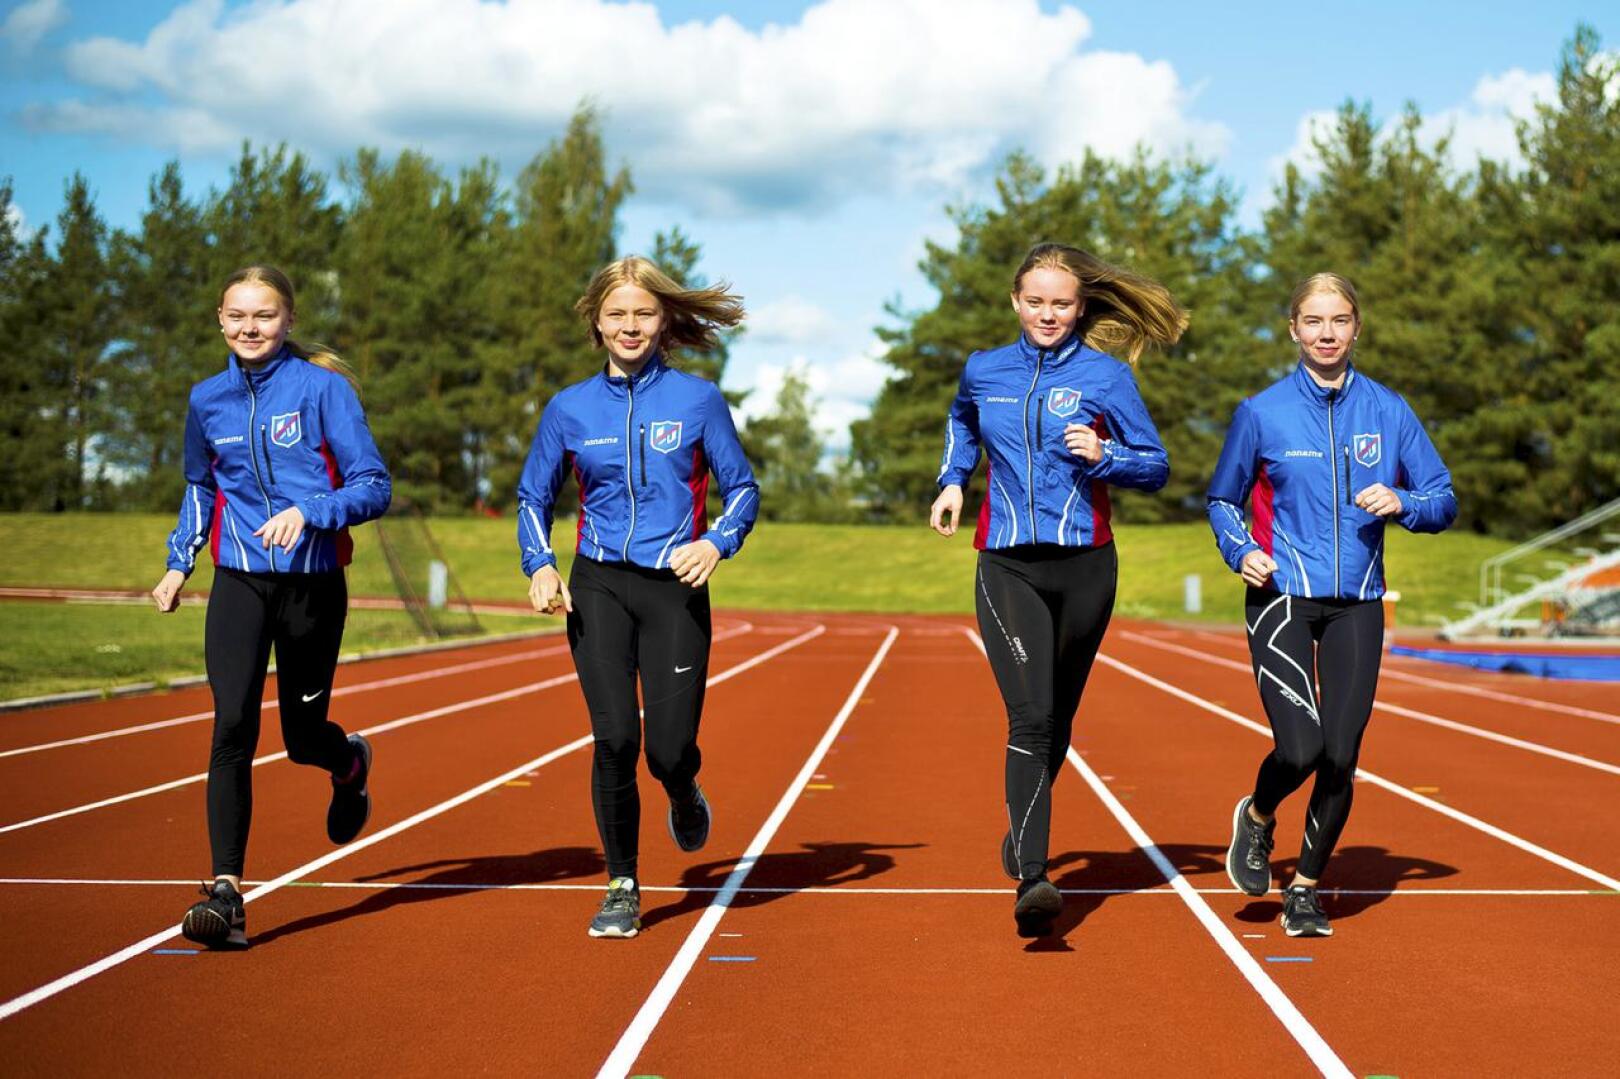 Liikunta ja urheilu ovat iso saaja Nivalan kaupungin järjestöavustuksissa. Kuvassa Nivalan Urheilijoiden viestijoukkue Tuiskulan kentällä vuonna 2019.